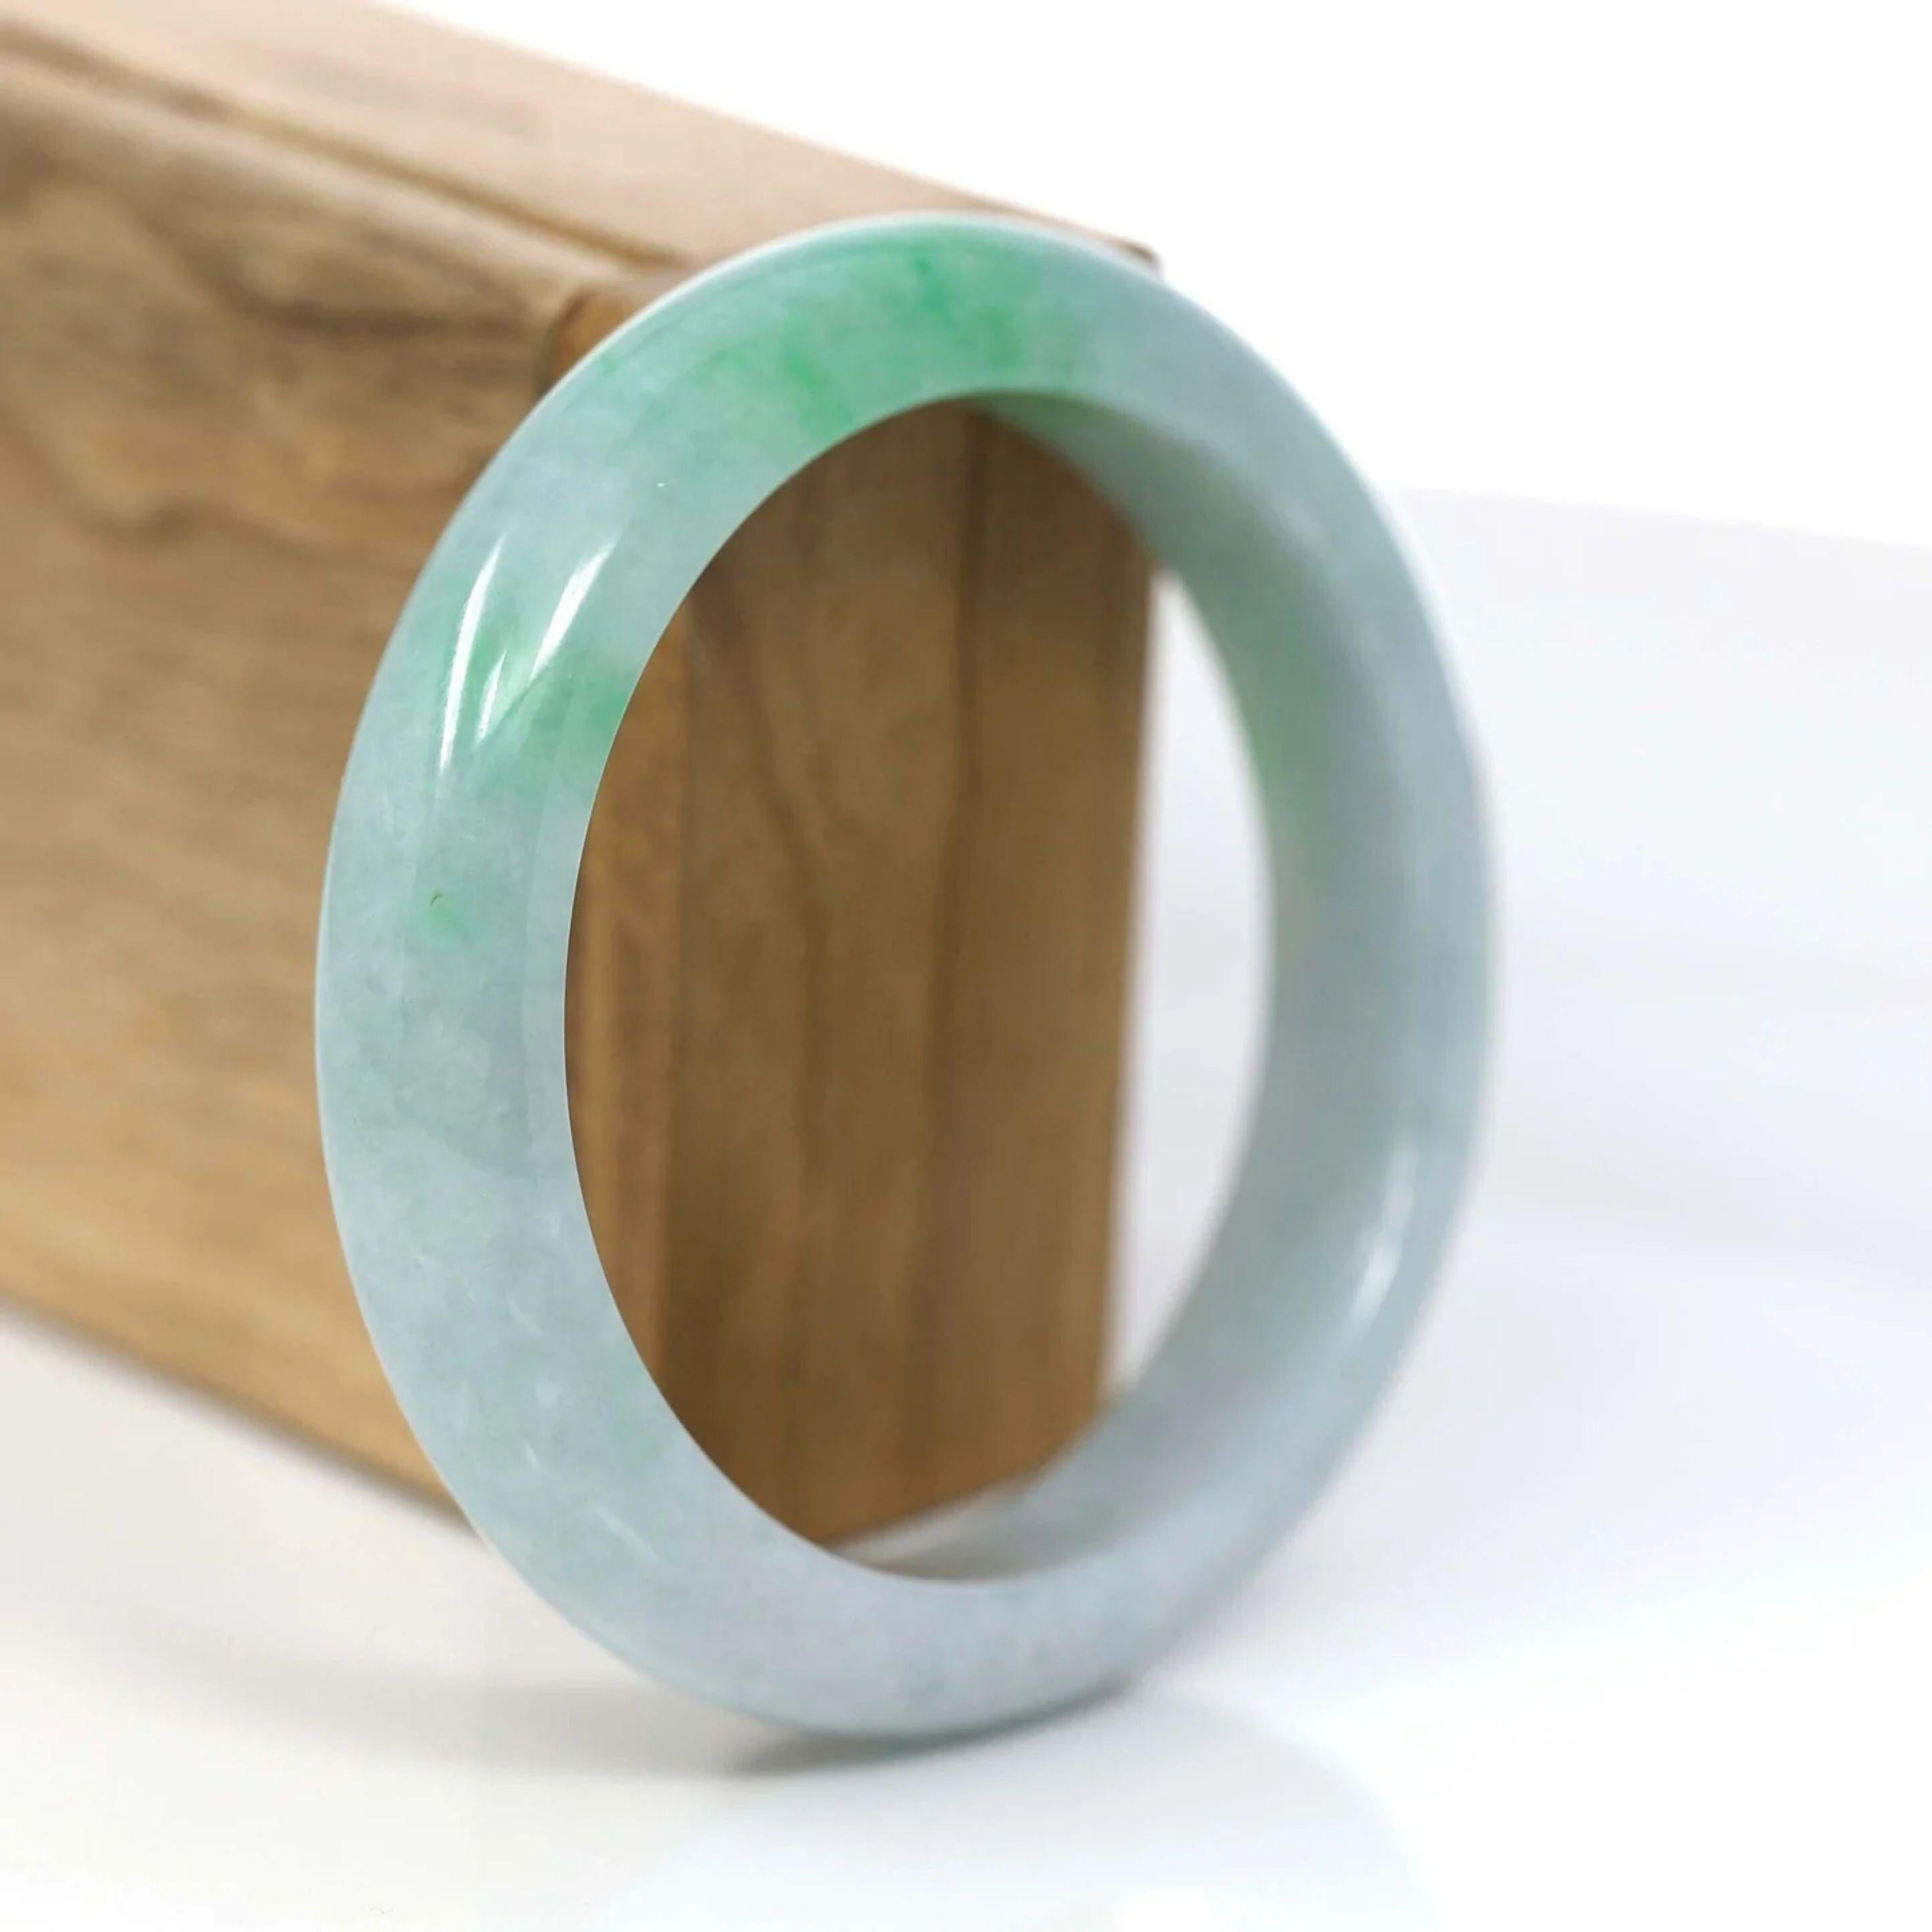 * DETAILS---Dieser Armreif ist aus hochwertiger echter burmesischer grüner Jadeit-Jade gefertigt, die Jade-Struktur ist transparent mit grünen Farben. Die grüne Farbe und die Transparenz, eine wirklich faszinierende Kombination. In natura sieht es